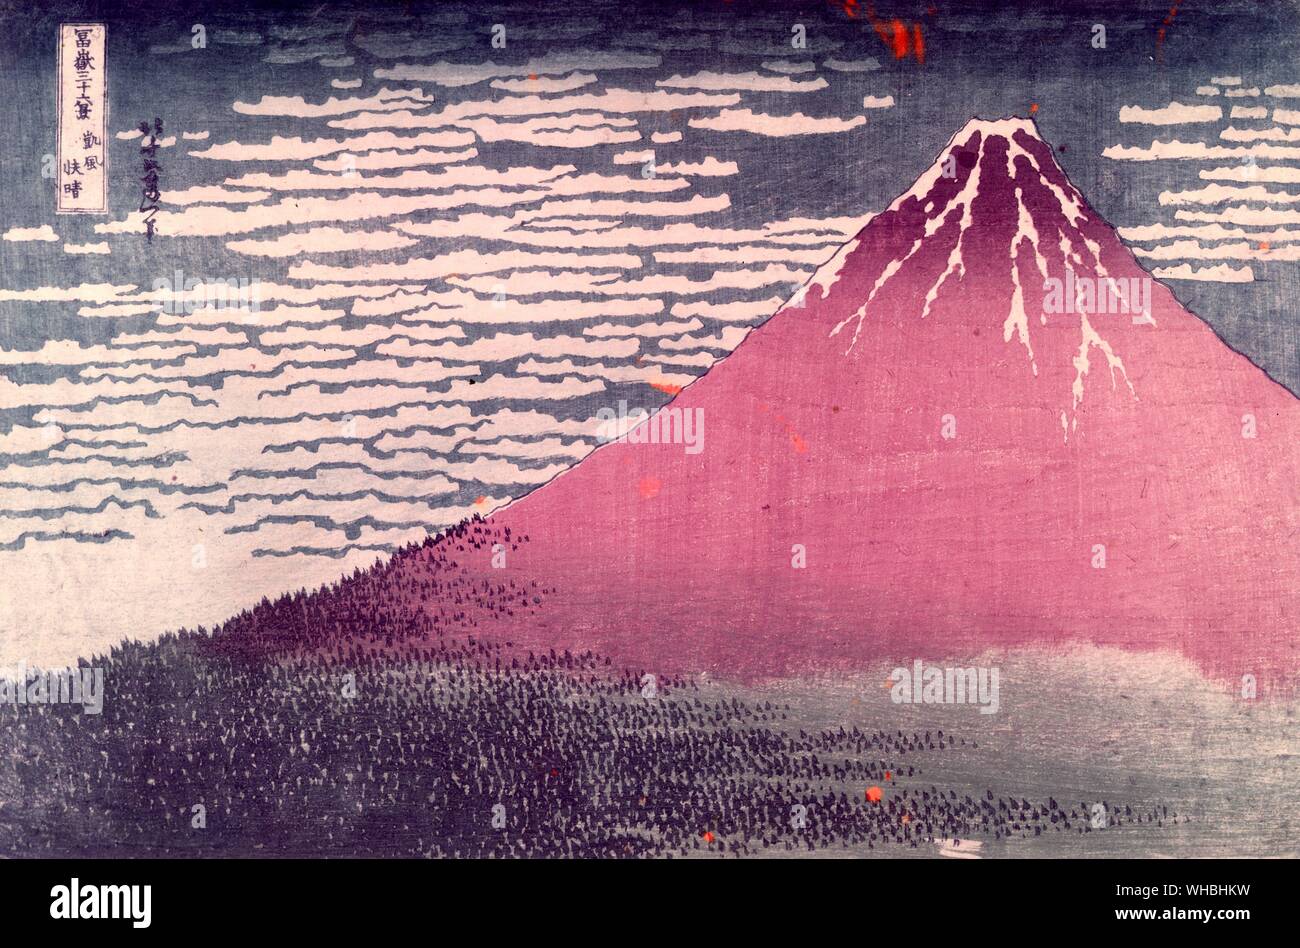 Katsushika Hokusai : 1760 - 10 mai 1849 artiste japonais ukiyo-e , graveur et peintre de la période Edo , vu ici le Mont Fuji par temps clair Banque D'Images